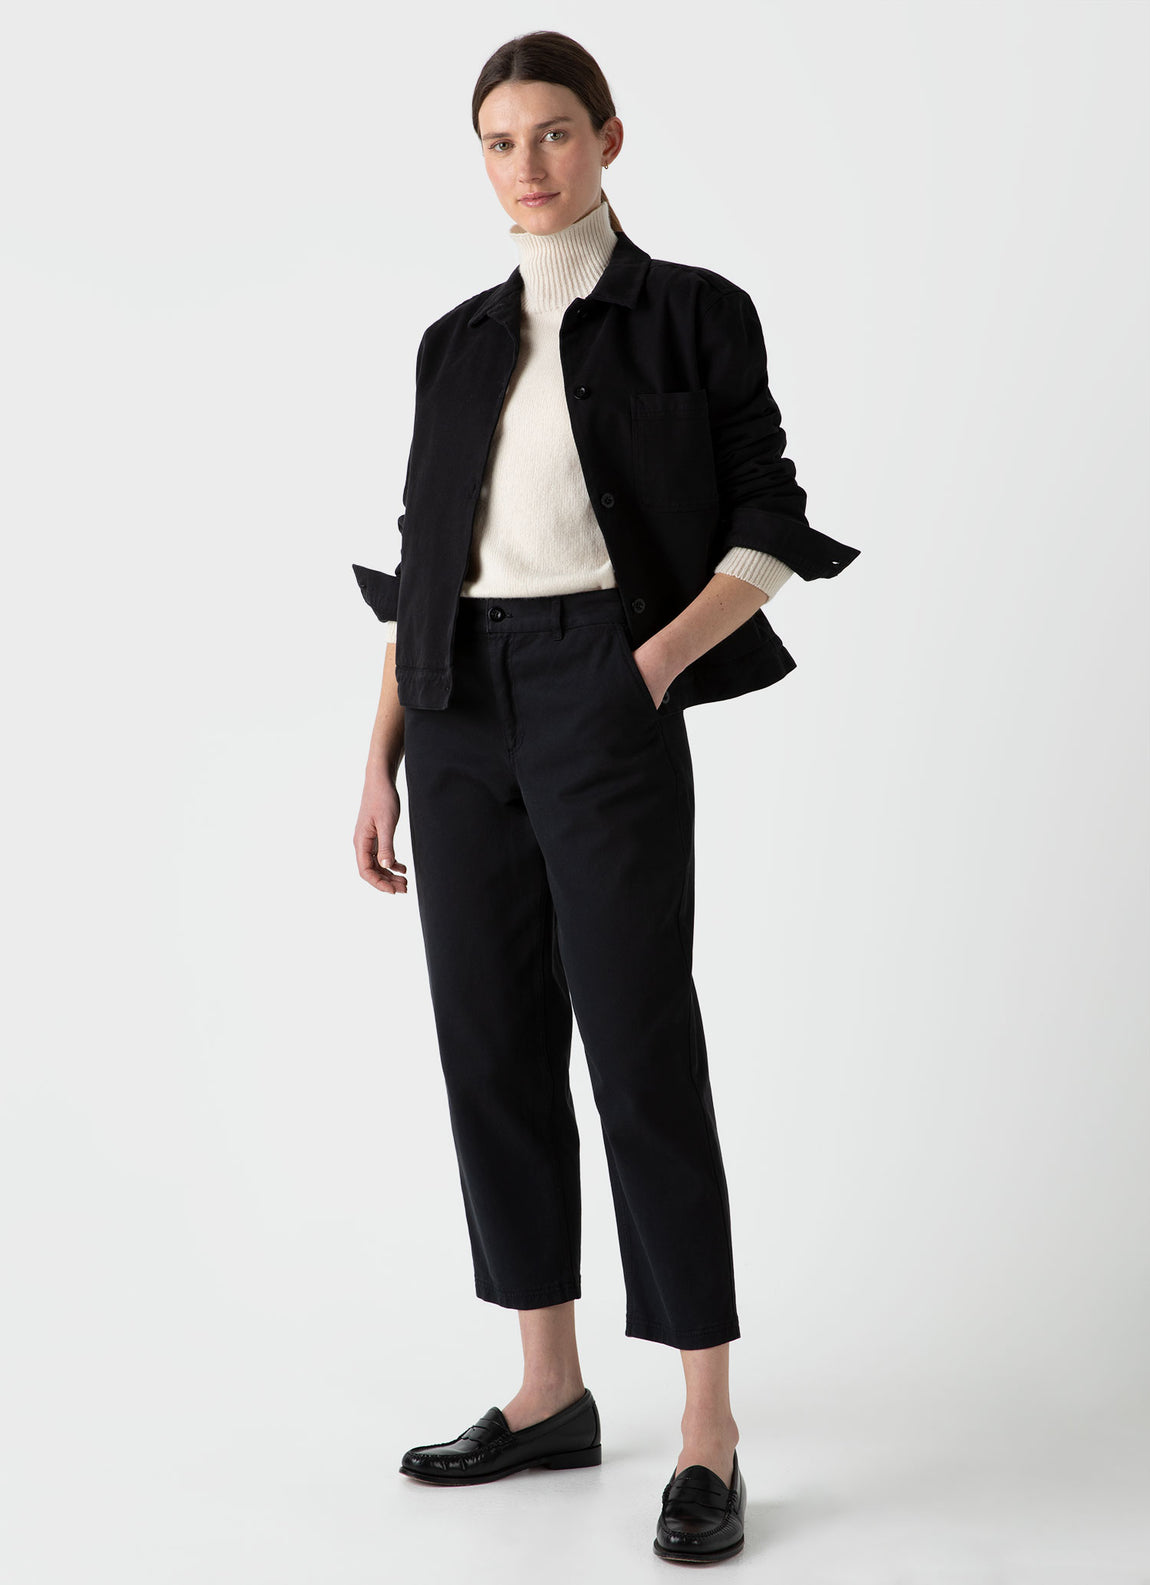 Women's Chore Jacket in Black | Sunspel